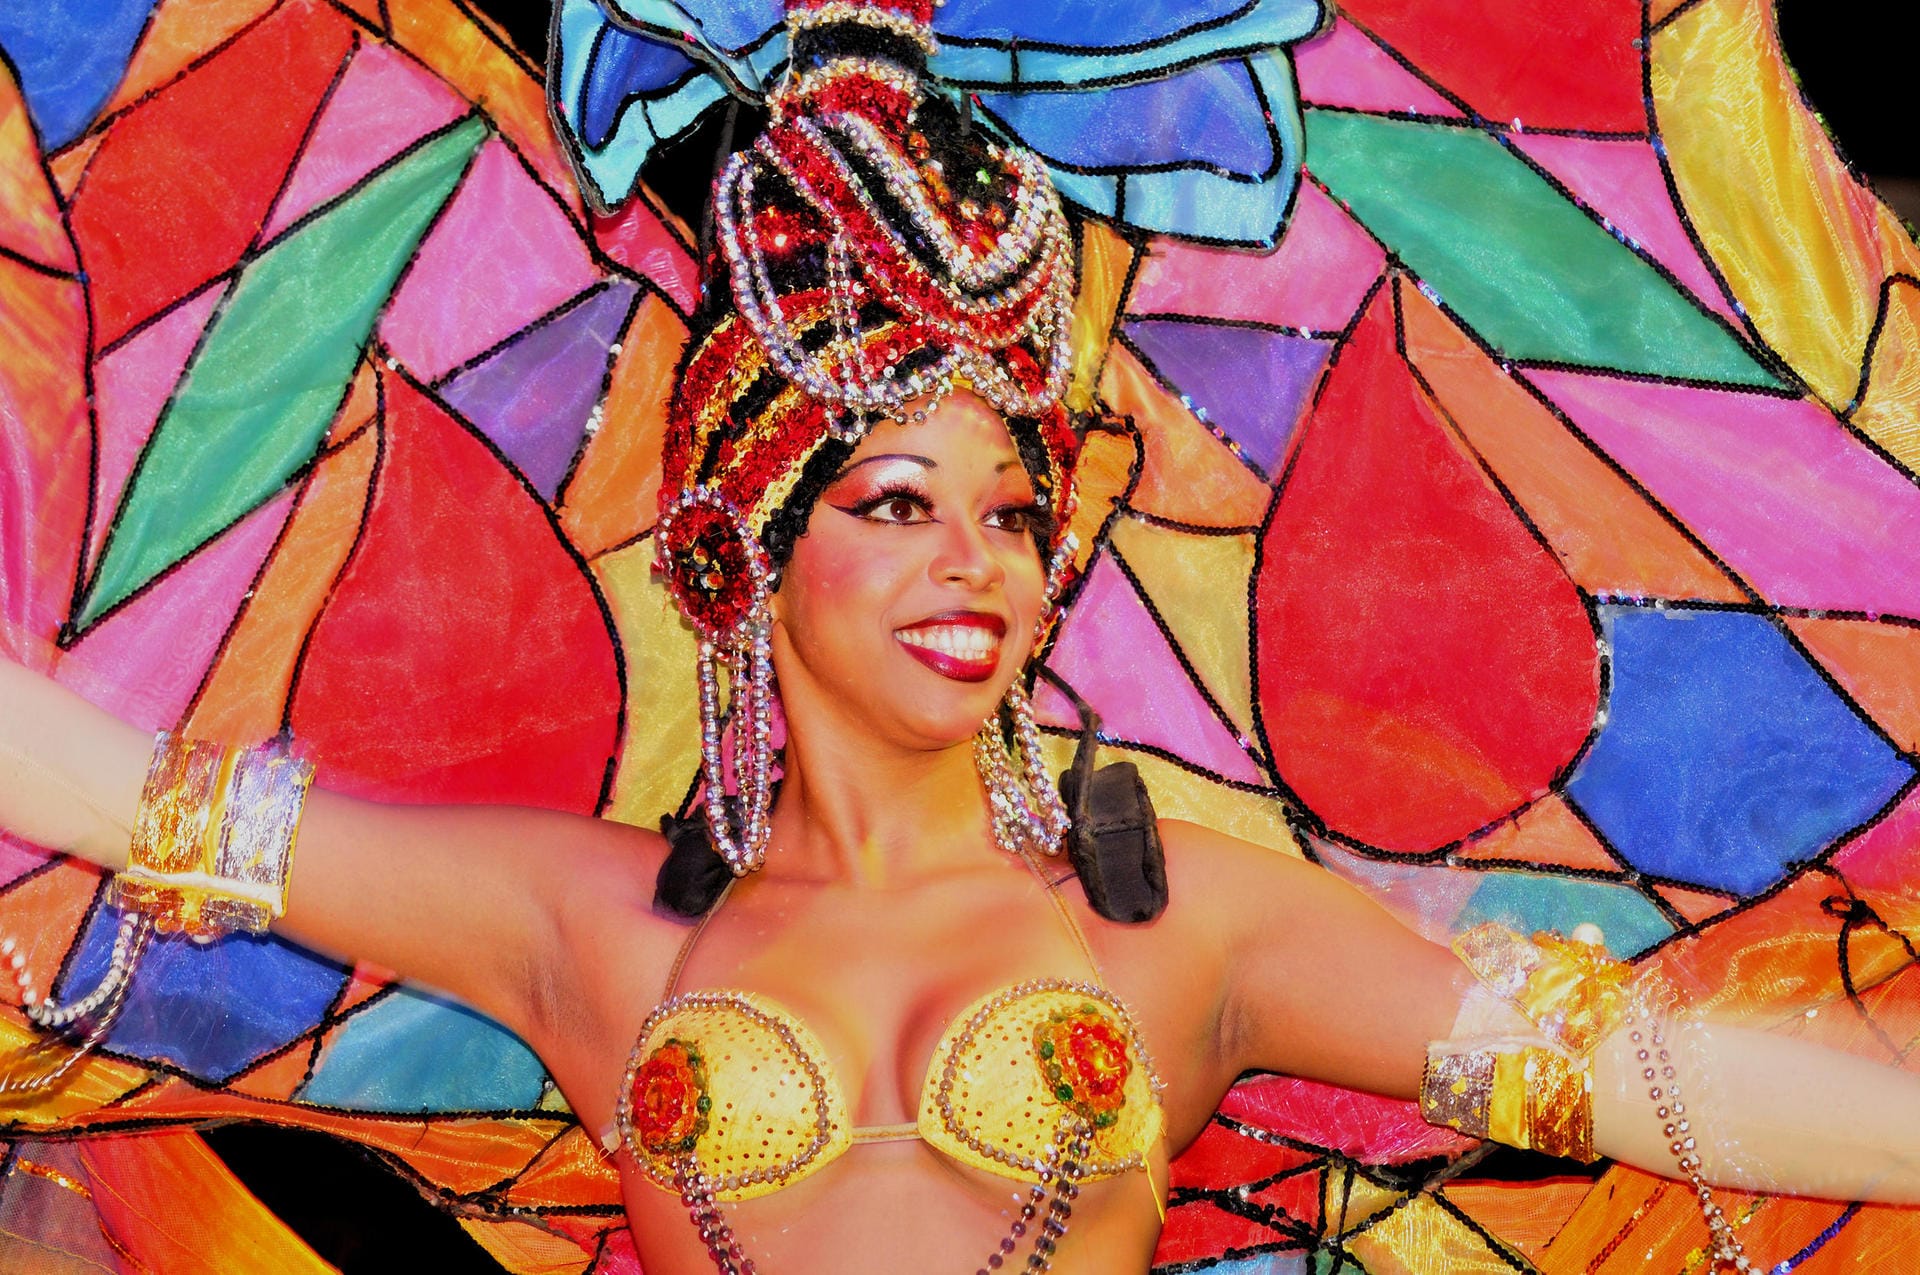 Karibik Cabaret Tropicana, Havanna, Kuba: Täglich werden im "Paradies unter Sternen" zwei Shows geboten. Zu den Höhepunkten zählt der "Tanz der Kronleuchter".